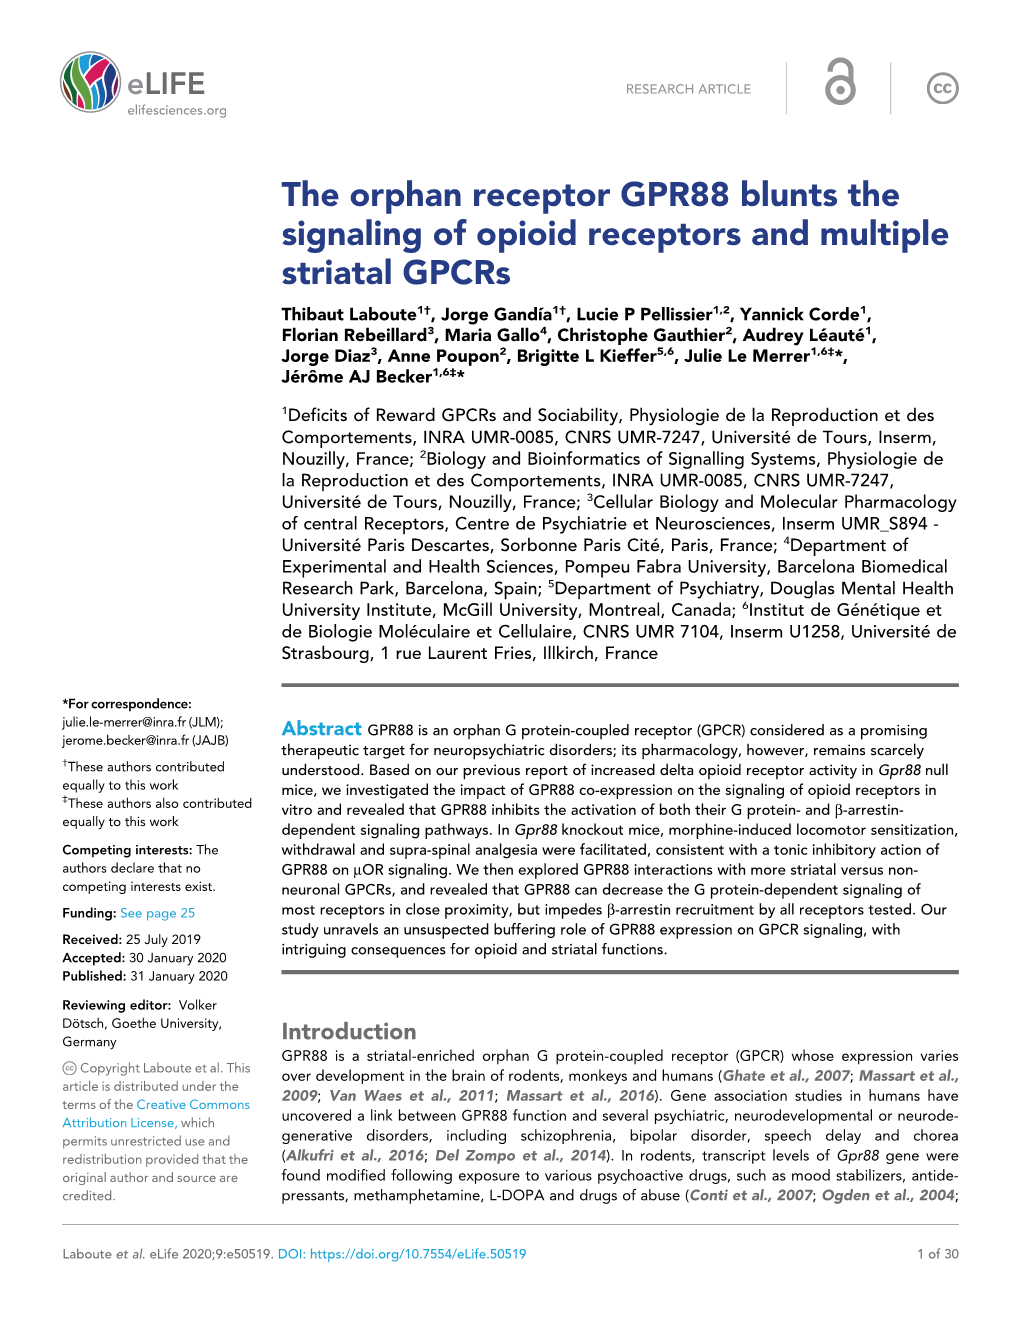 The Orphan Receptor GPR88 Blunts the Signaling of Opioid Receptors